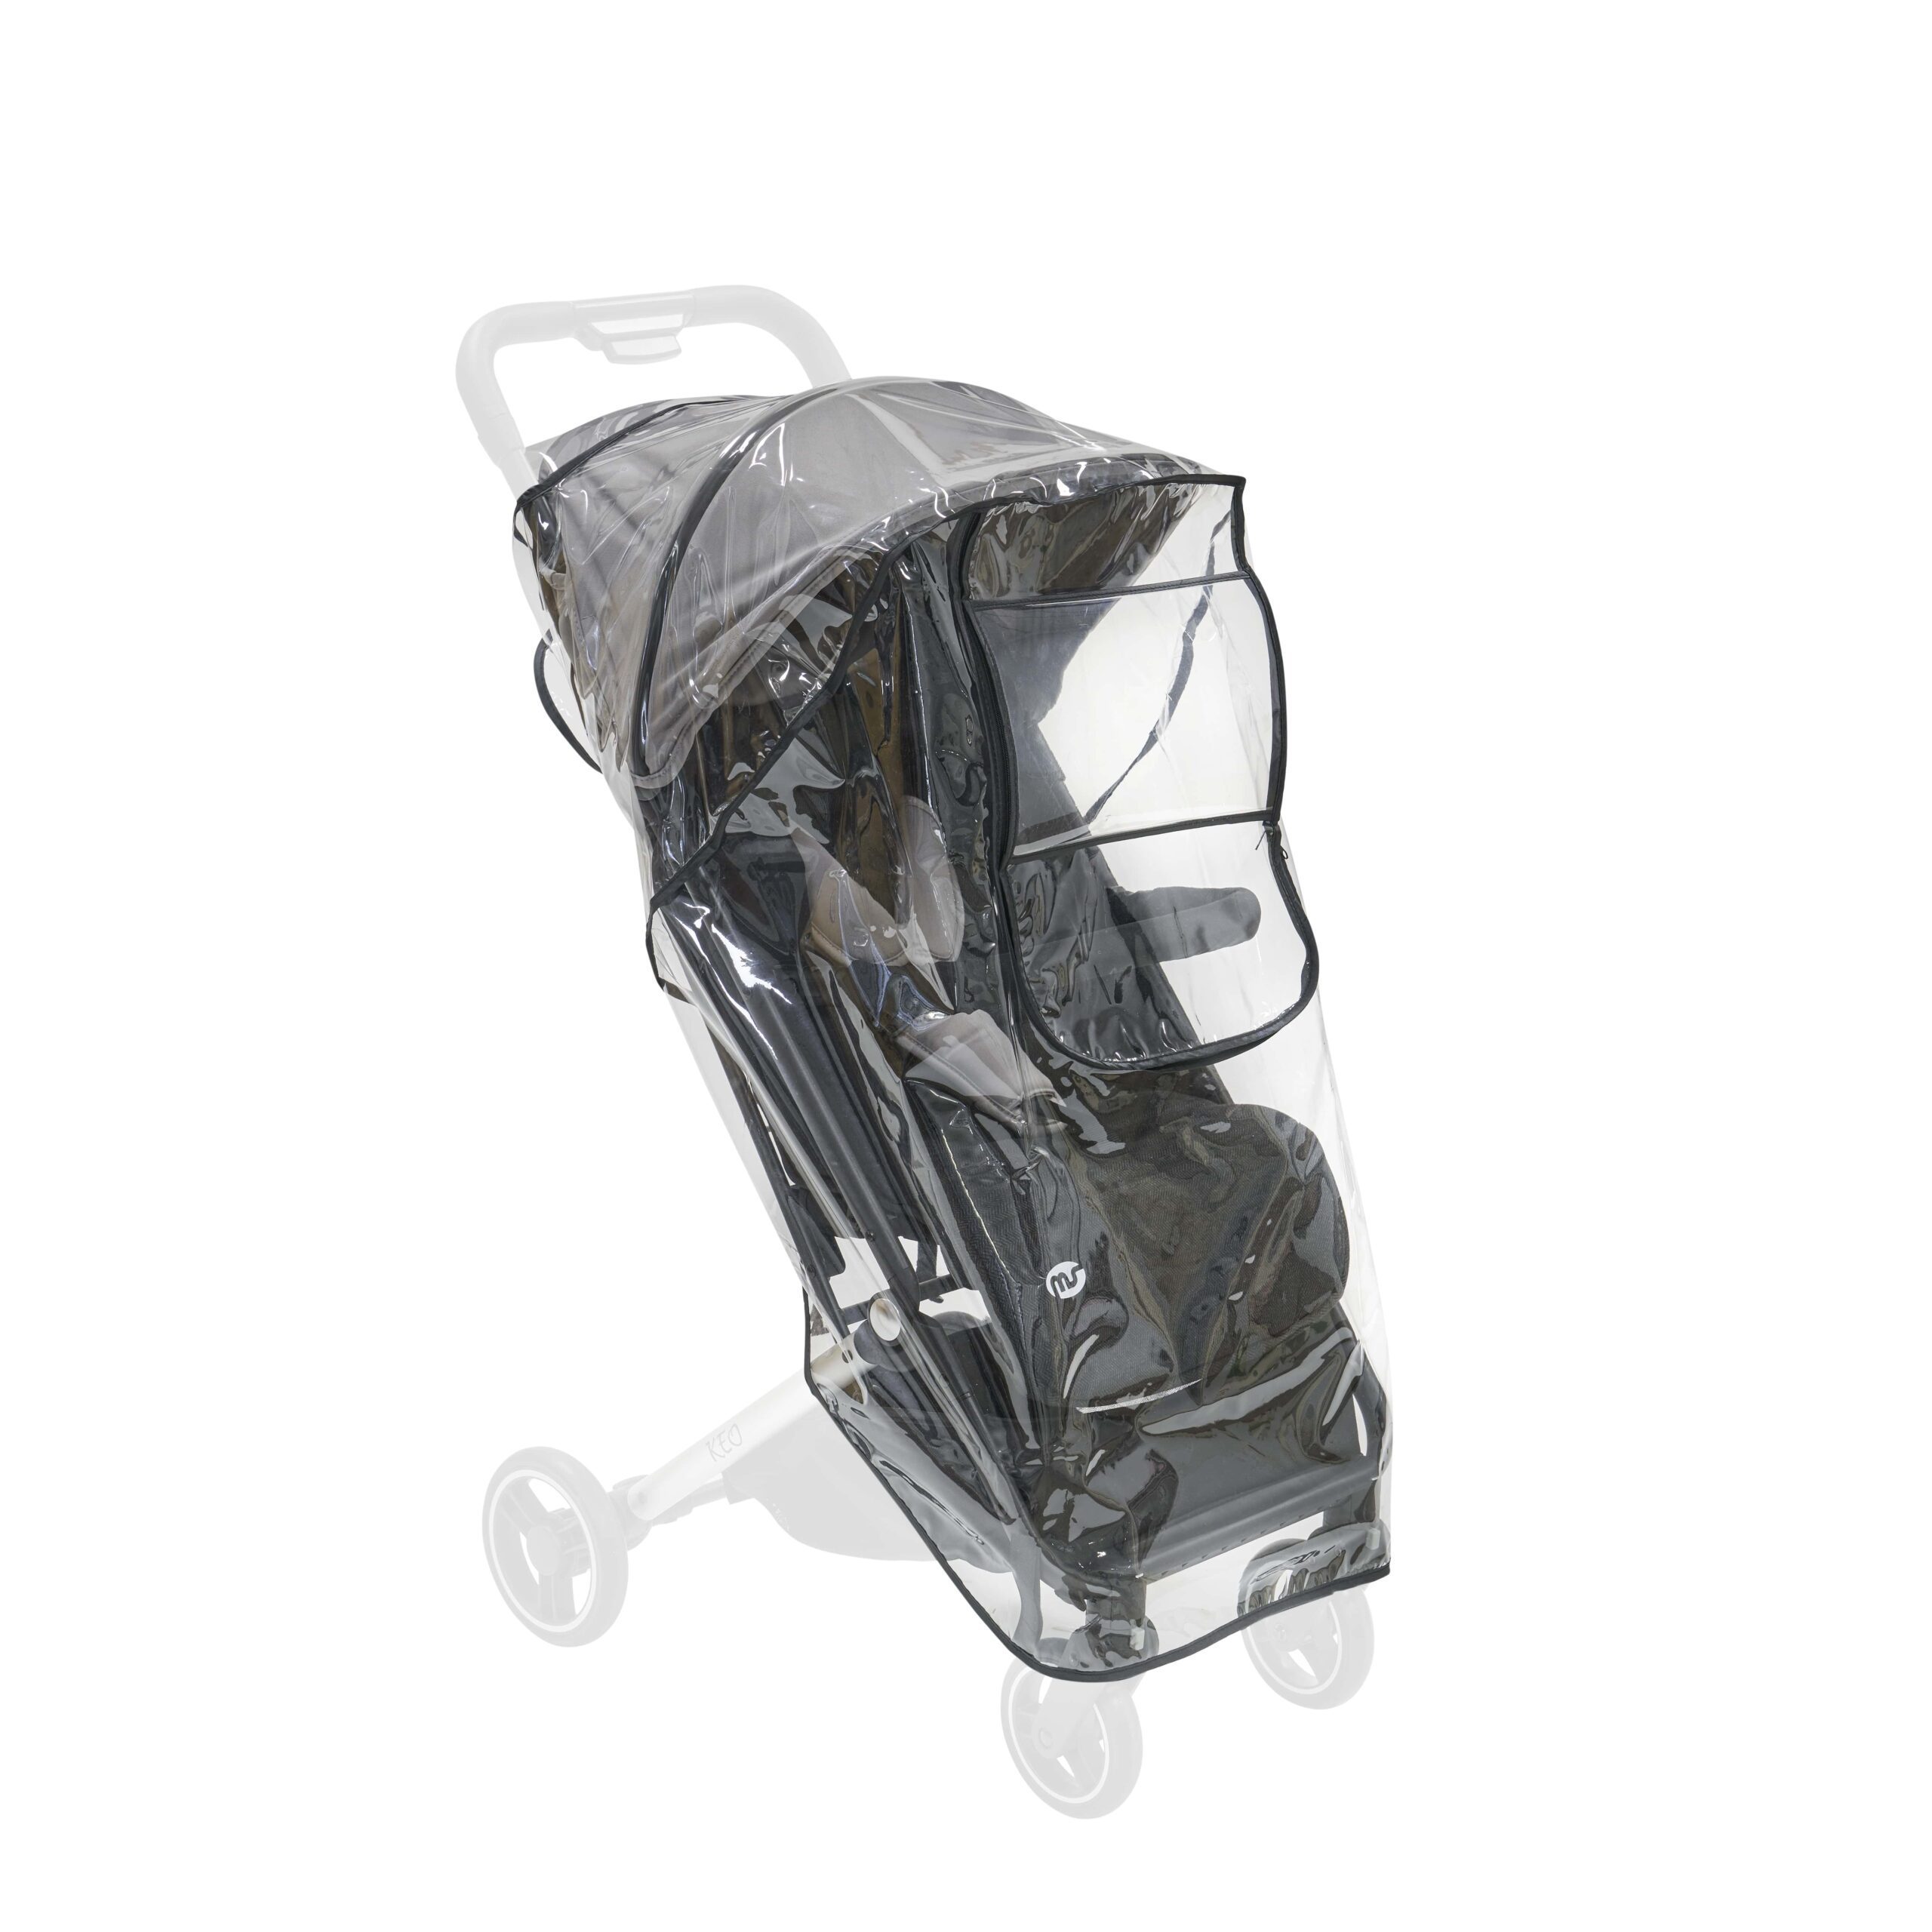 Burbuja de lluvia Universal para carrito de bebé - Innovaciones MS